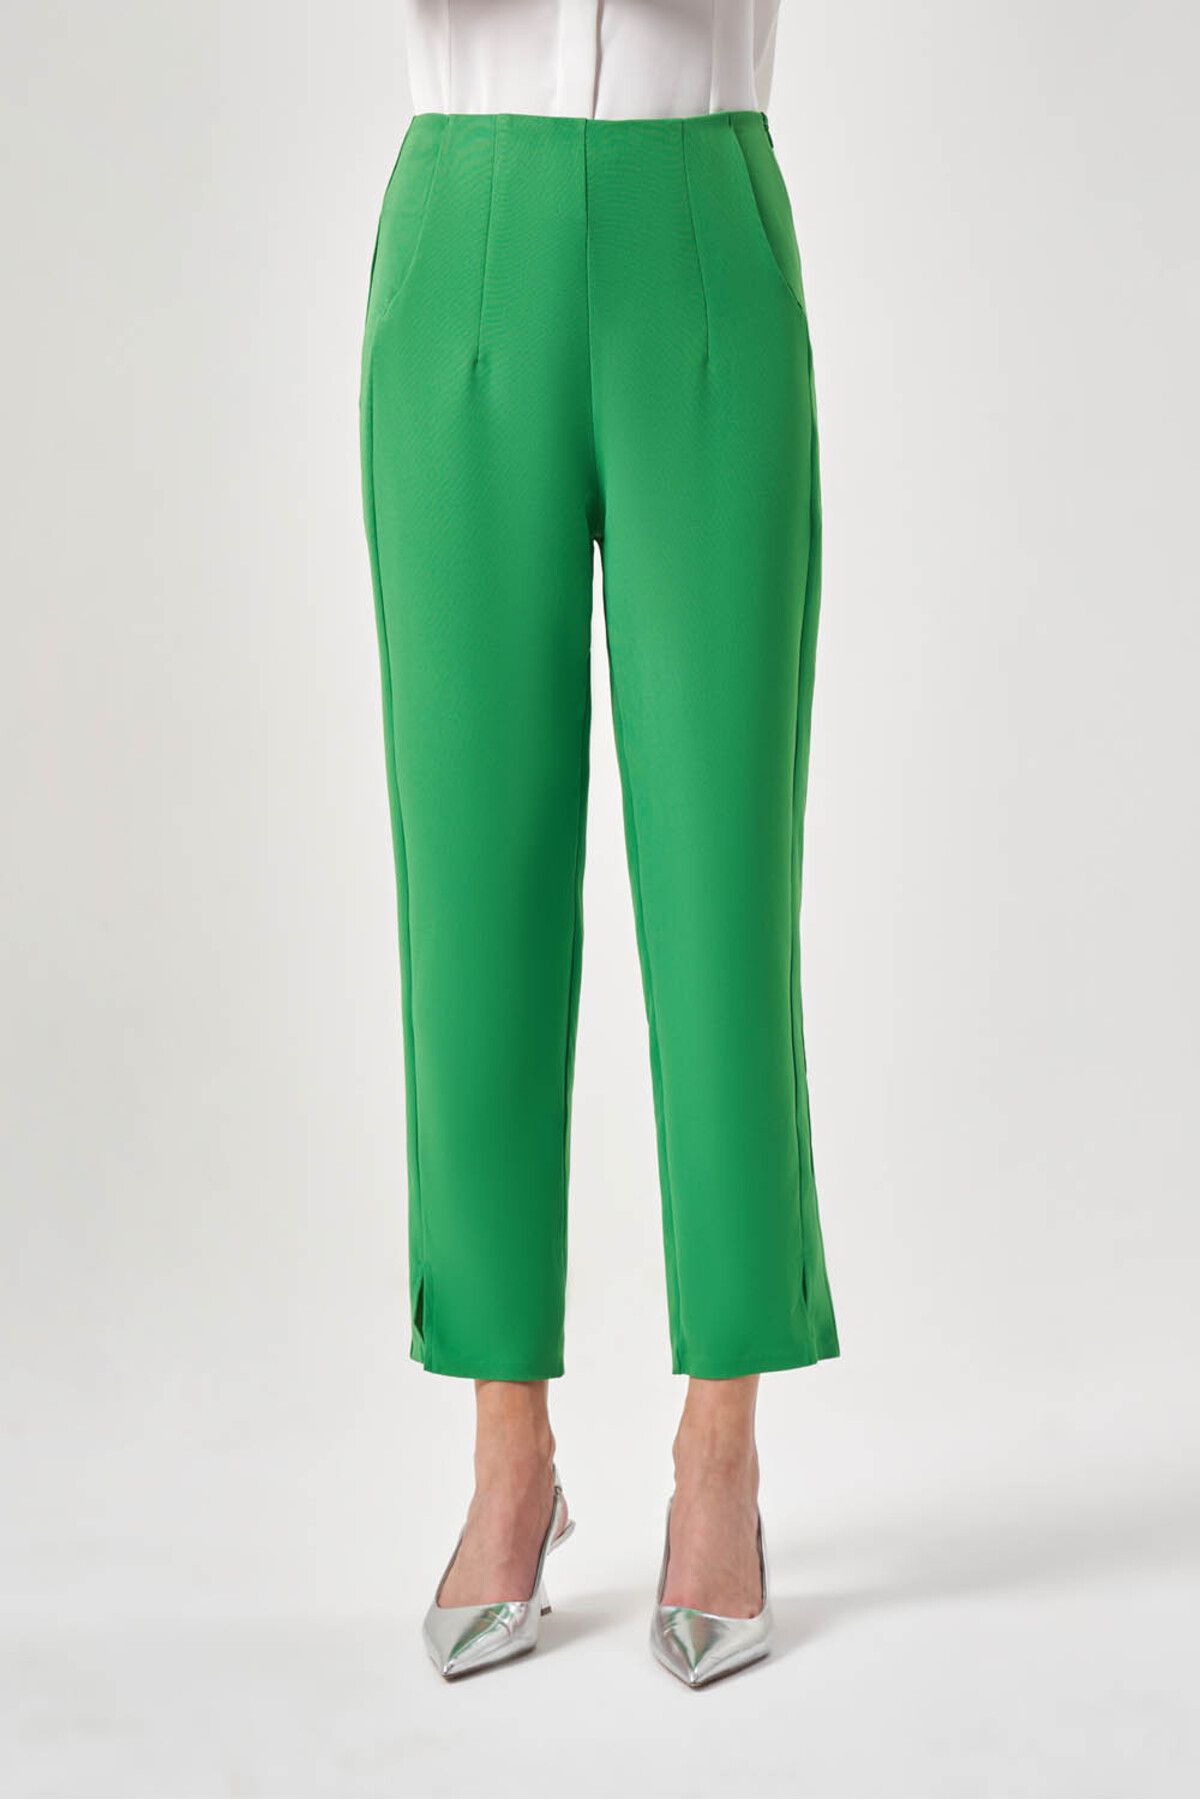 Mizalle Pensli Basic Yeşil Pantolon